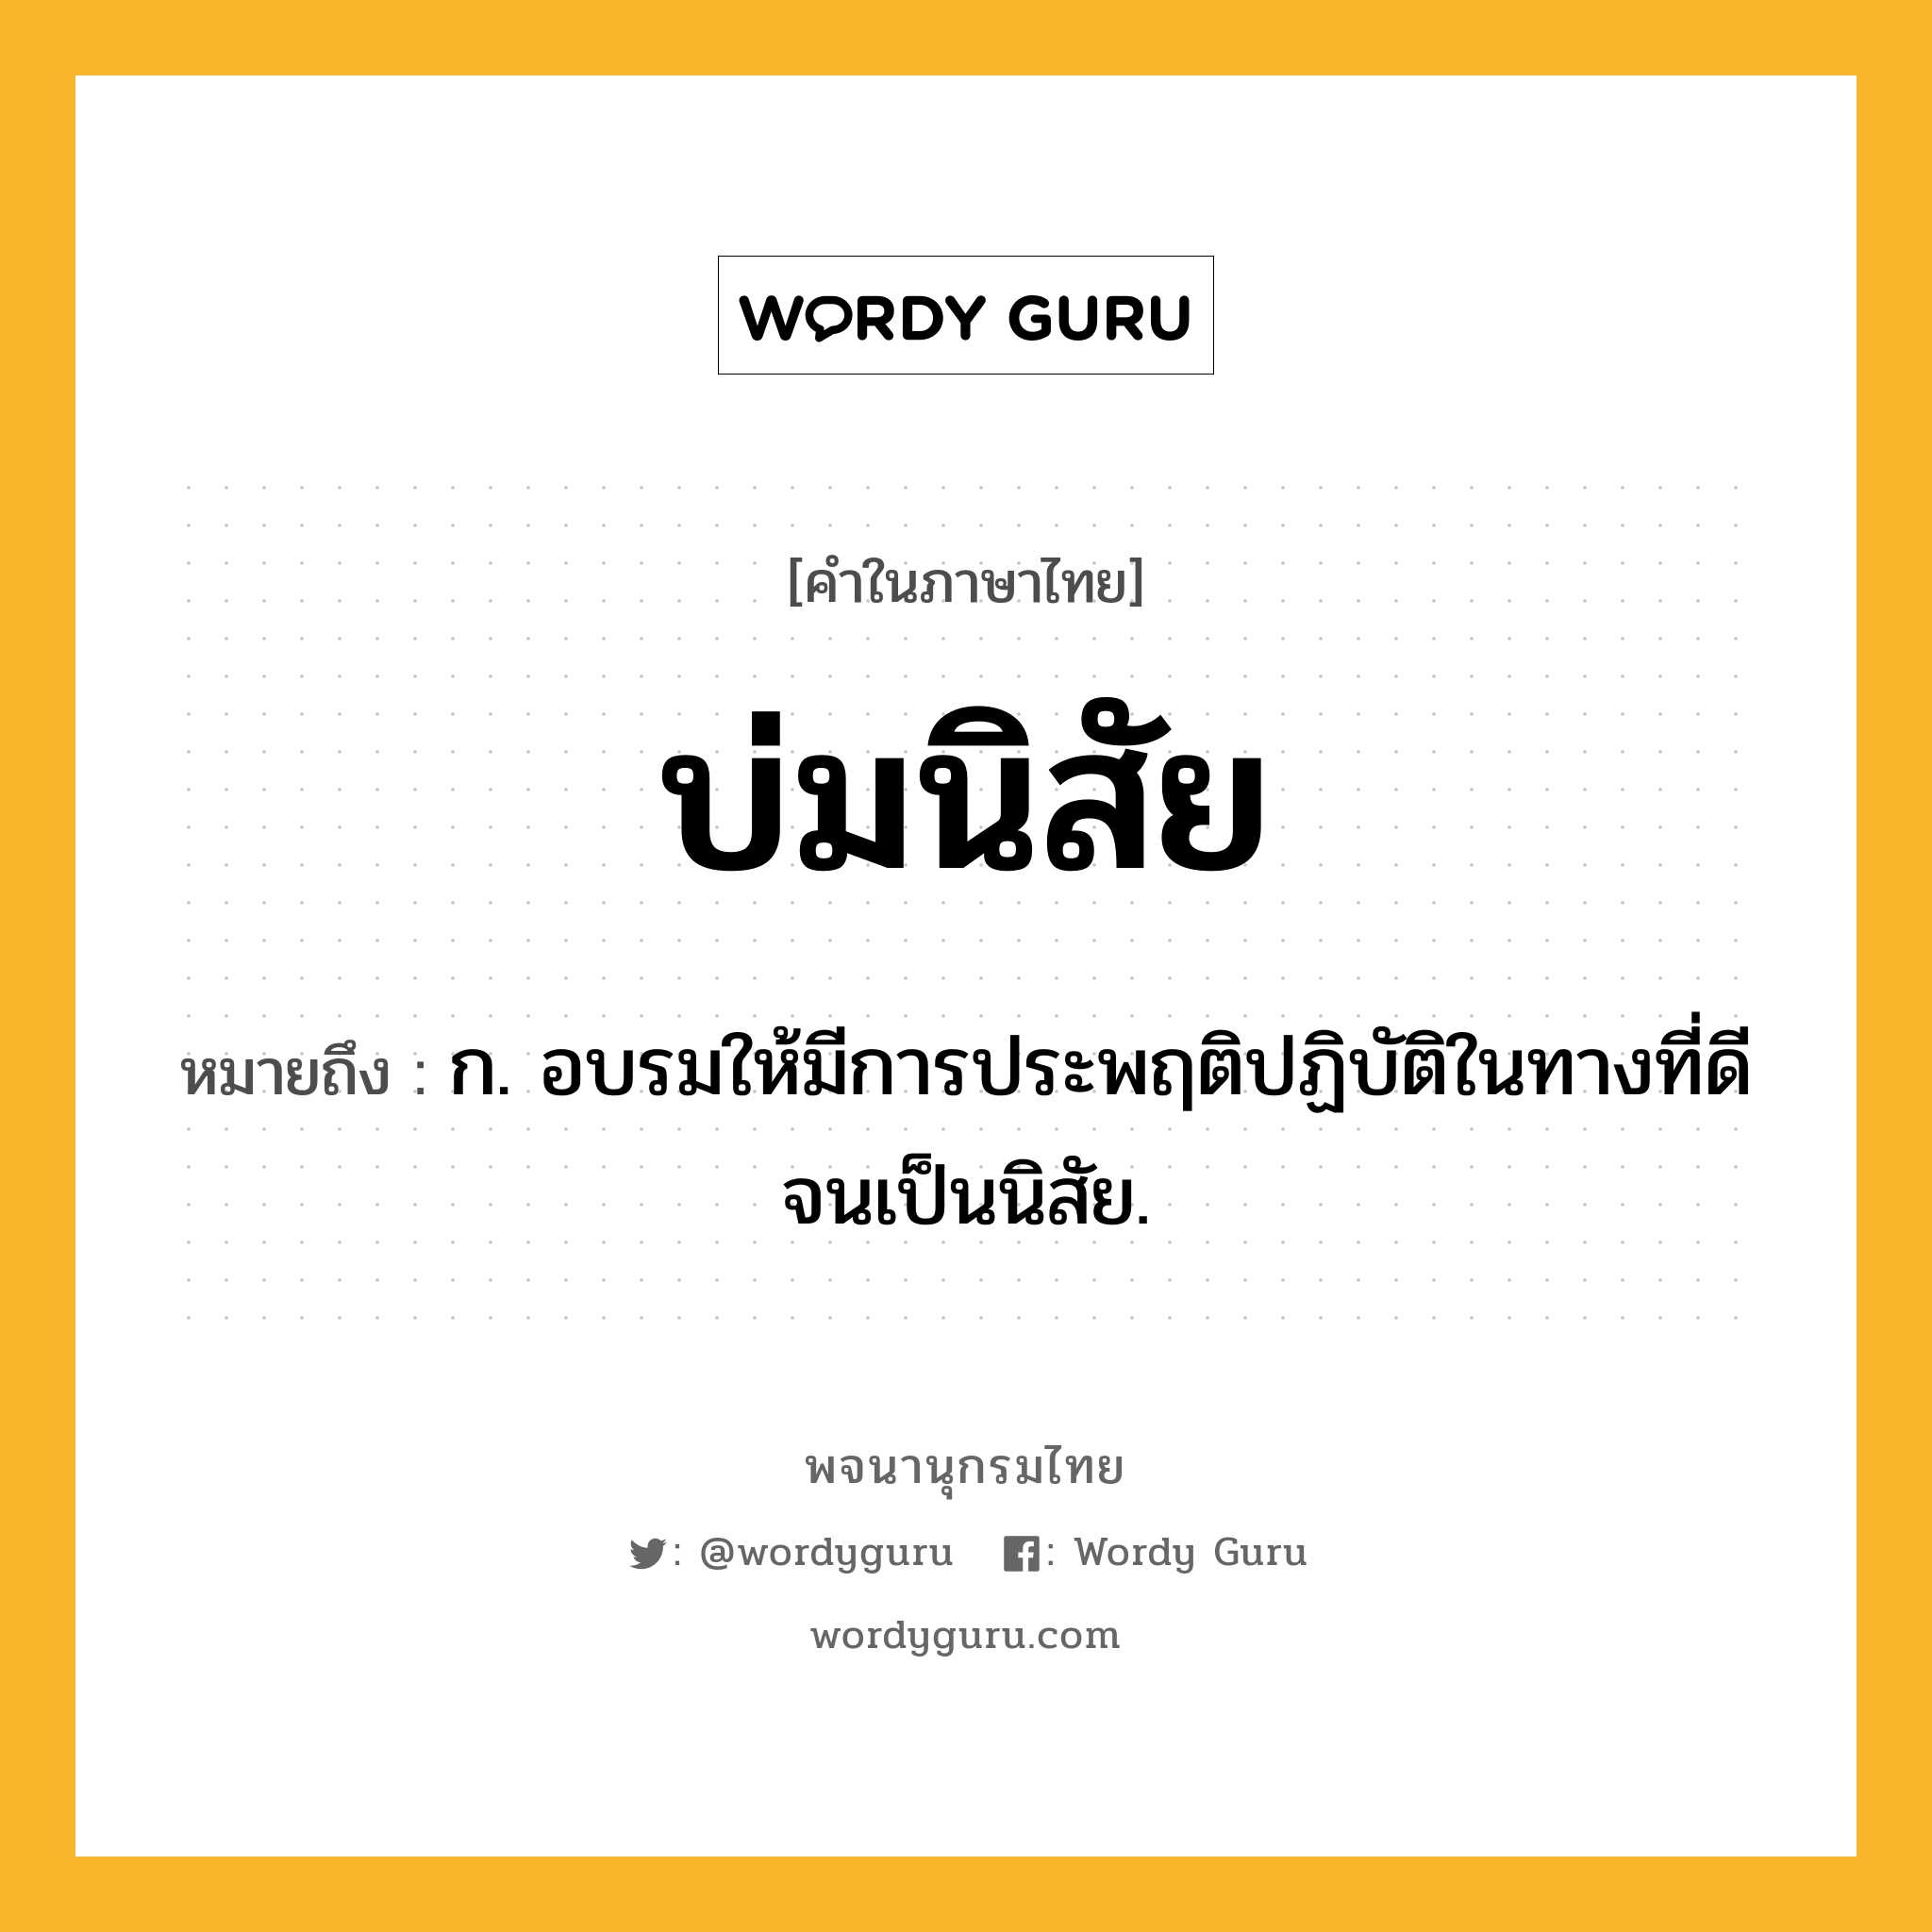 บ่มนิสัย ความหมาย หมายถึงอะไร?, คำในภาษาไทย บ่มนิสัย หมายถึง ก. อบรมให้มีการประพฤติปฏิบัติในทางที่ดีจนเป็นนิสัย.